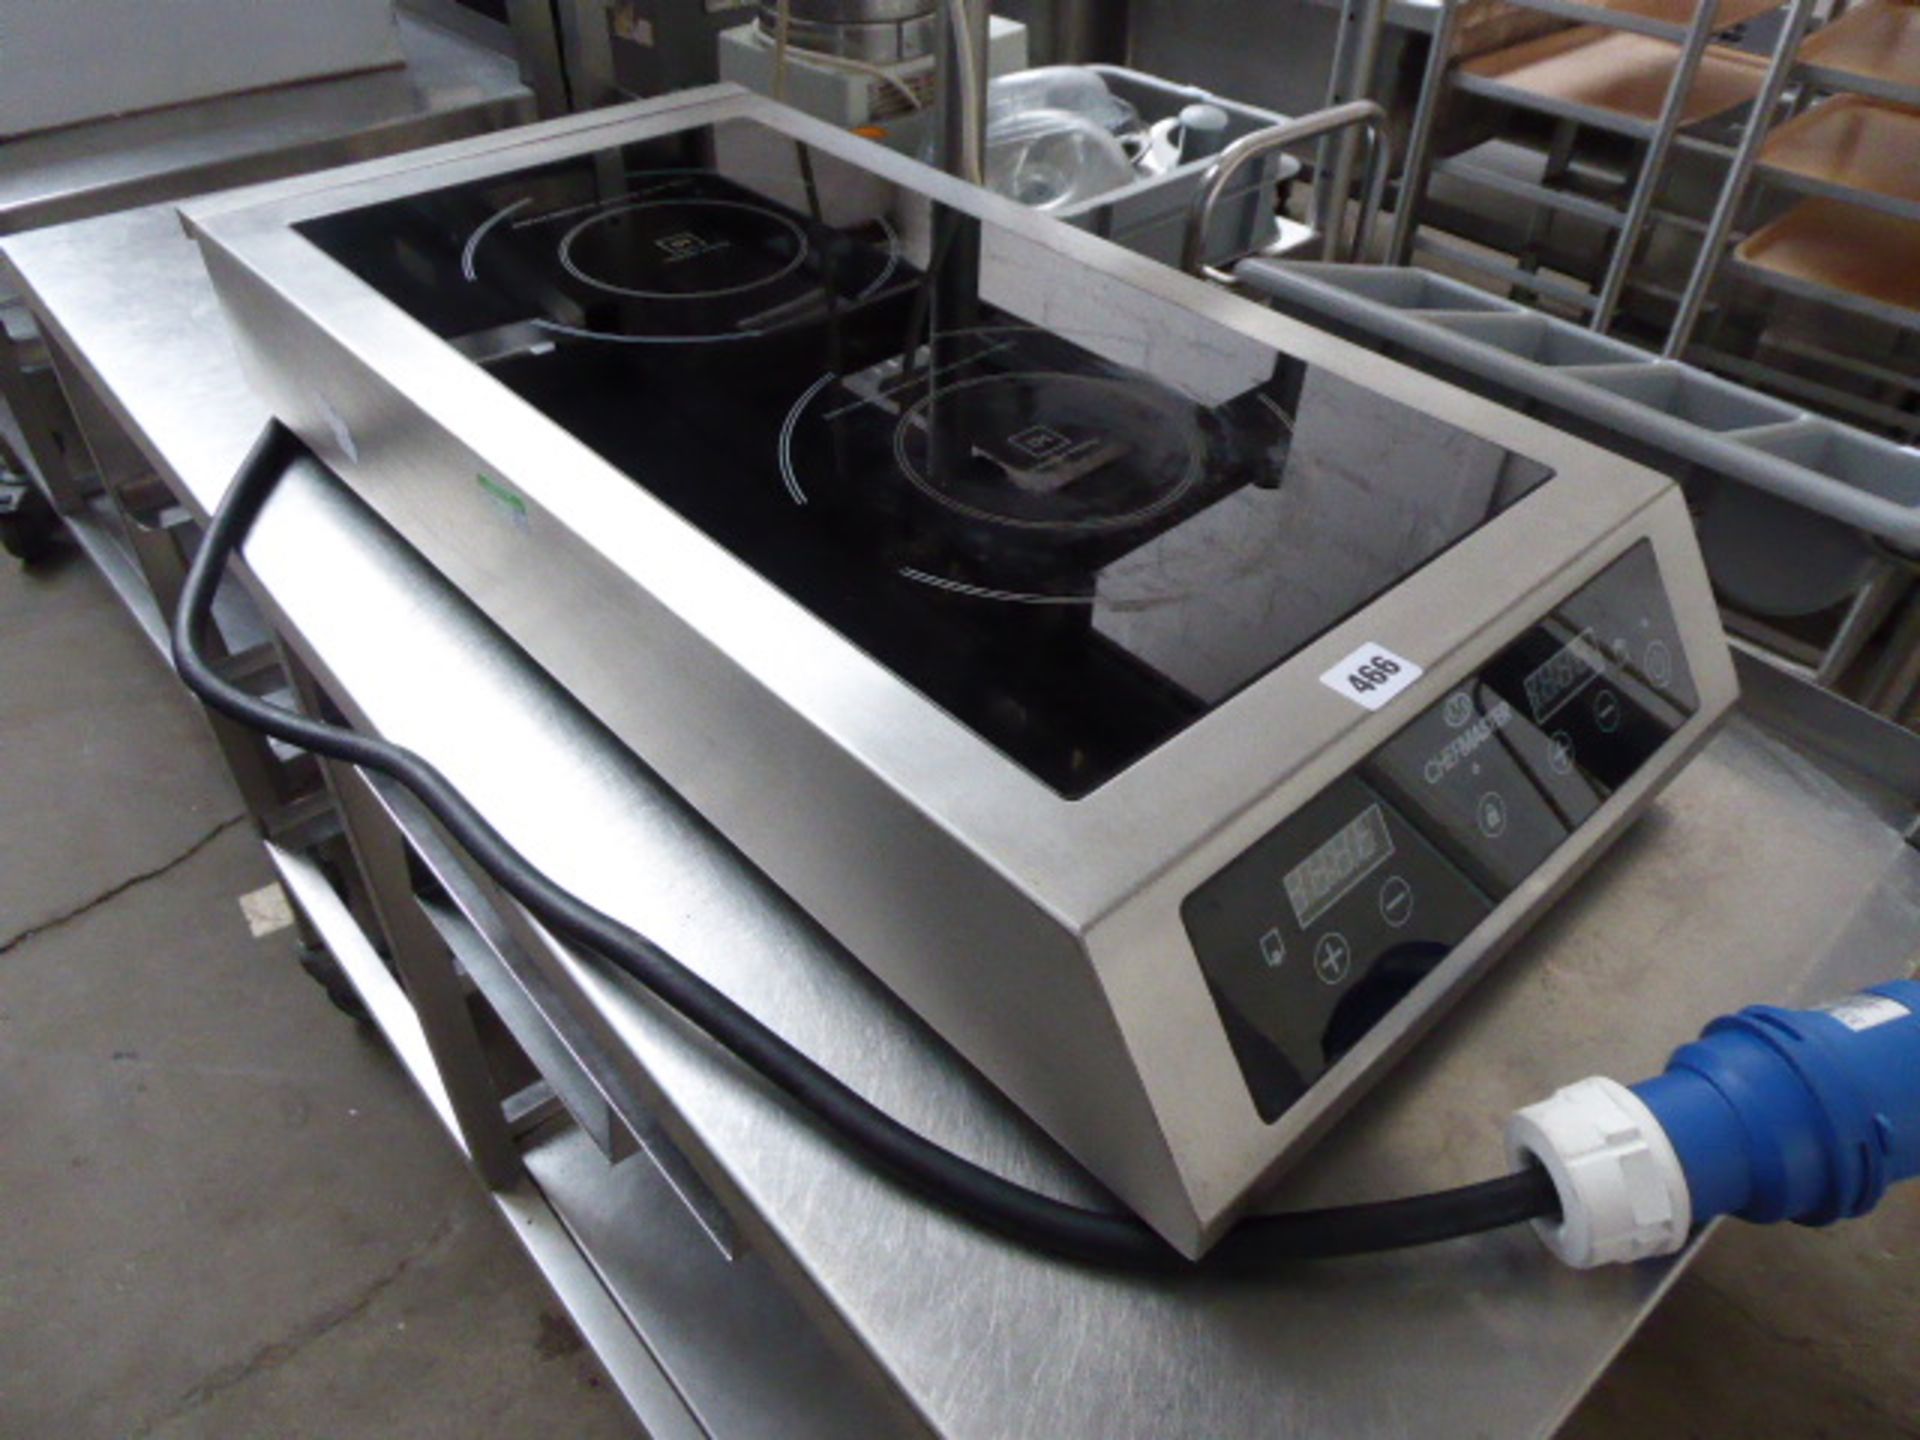 36cm electric Chefmaster ceramic induction hob